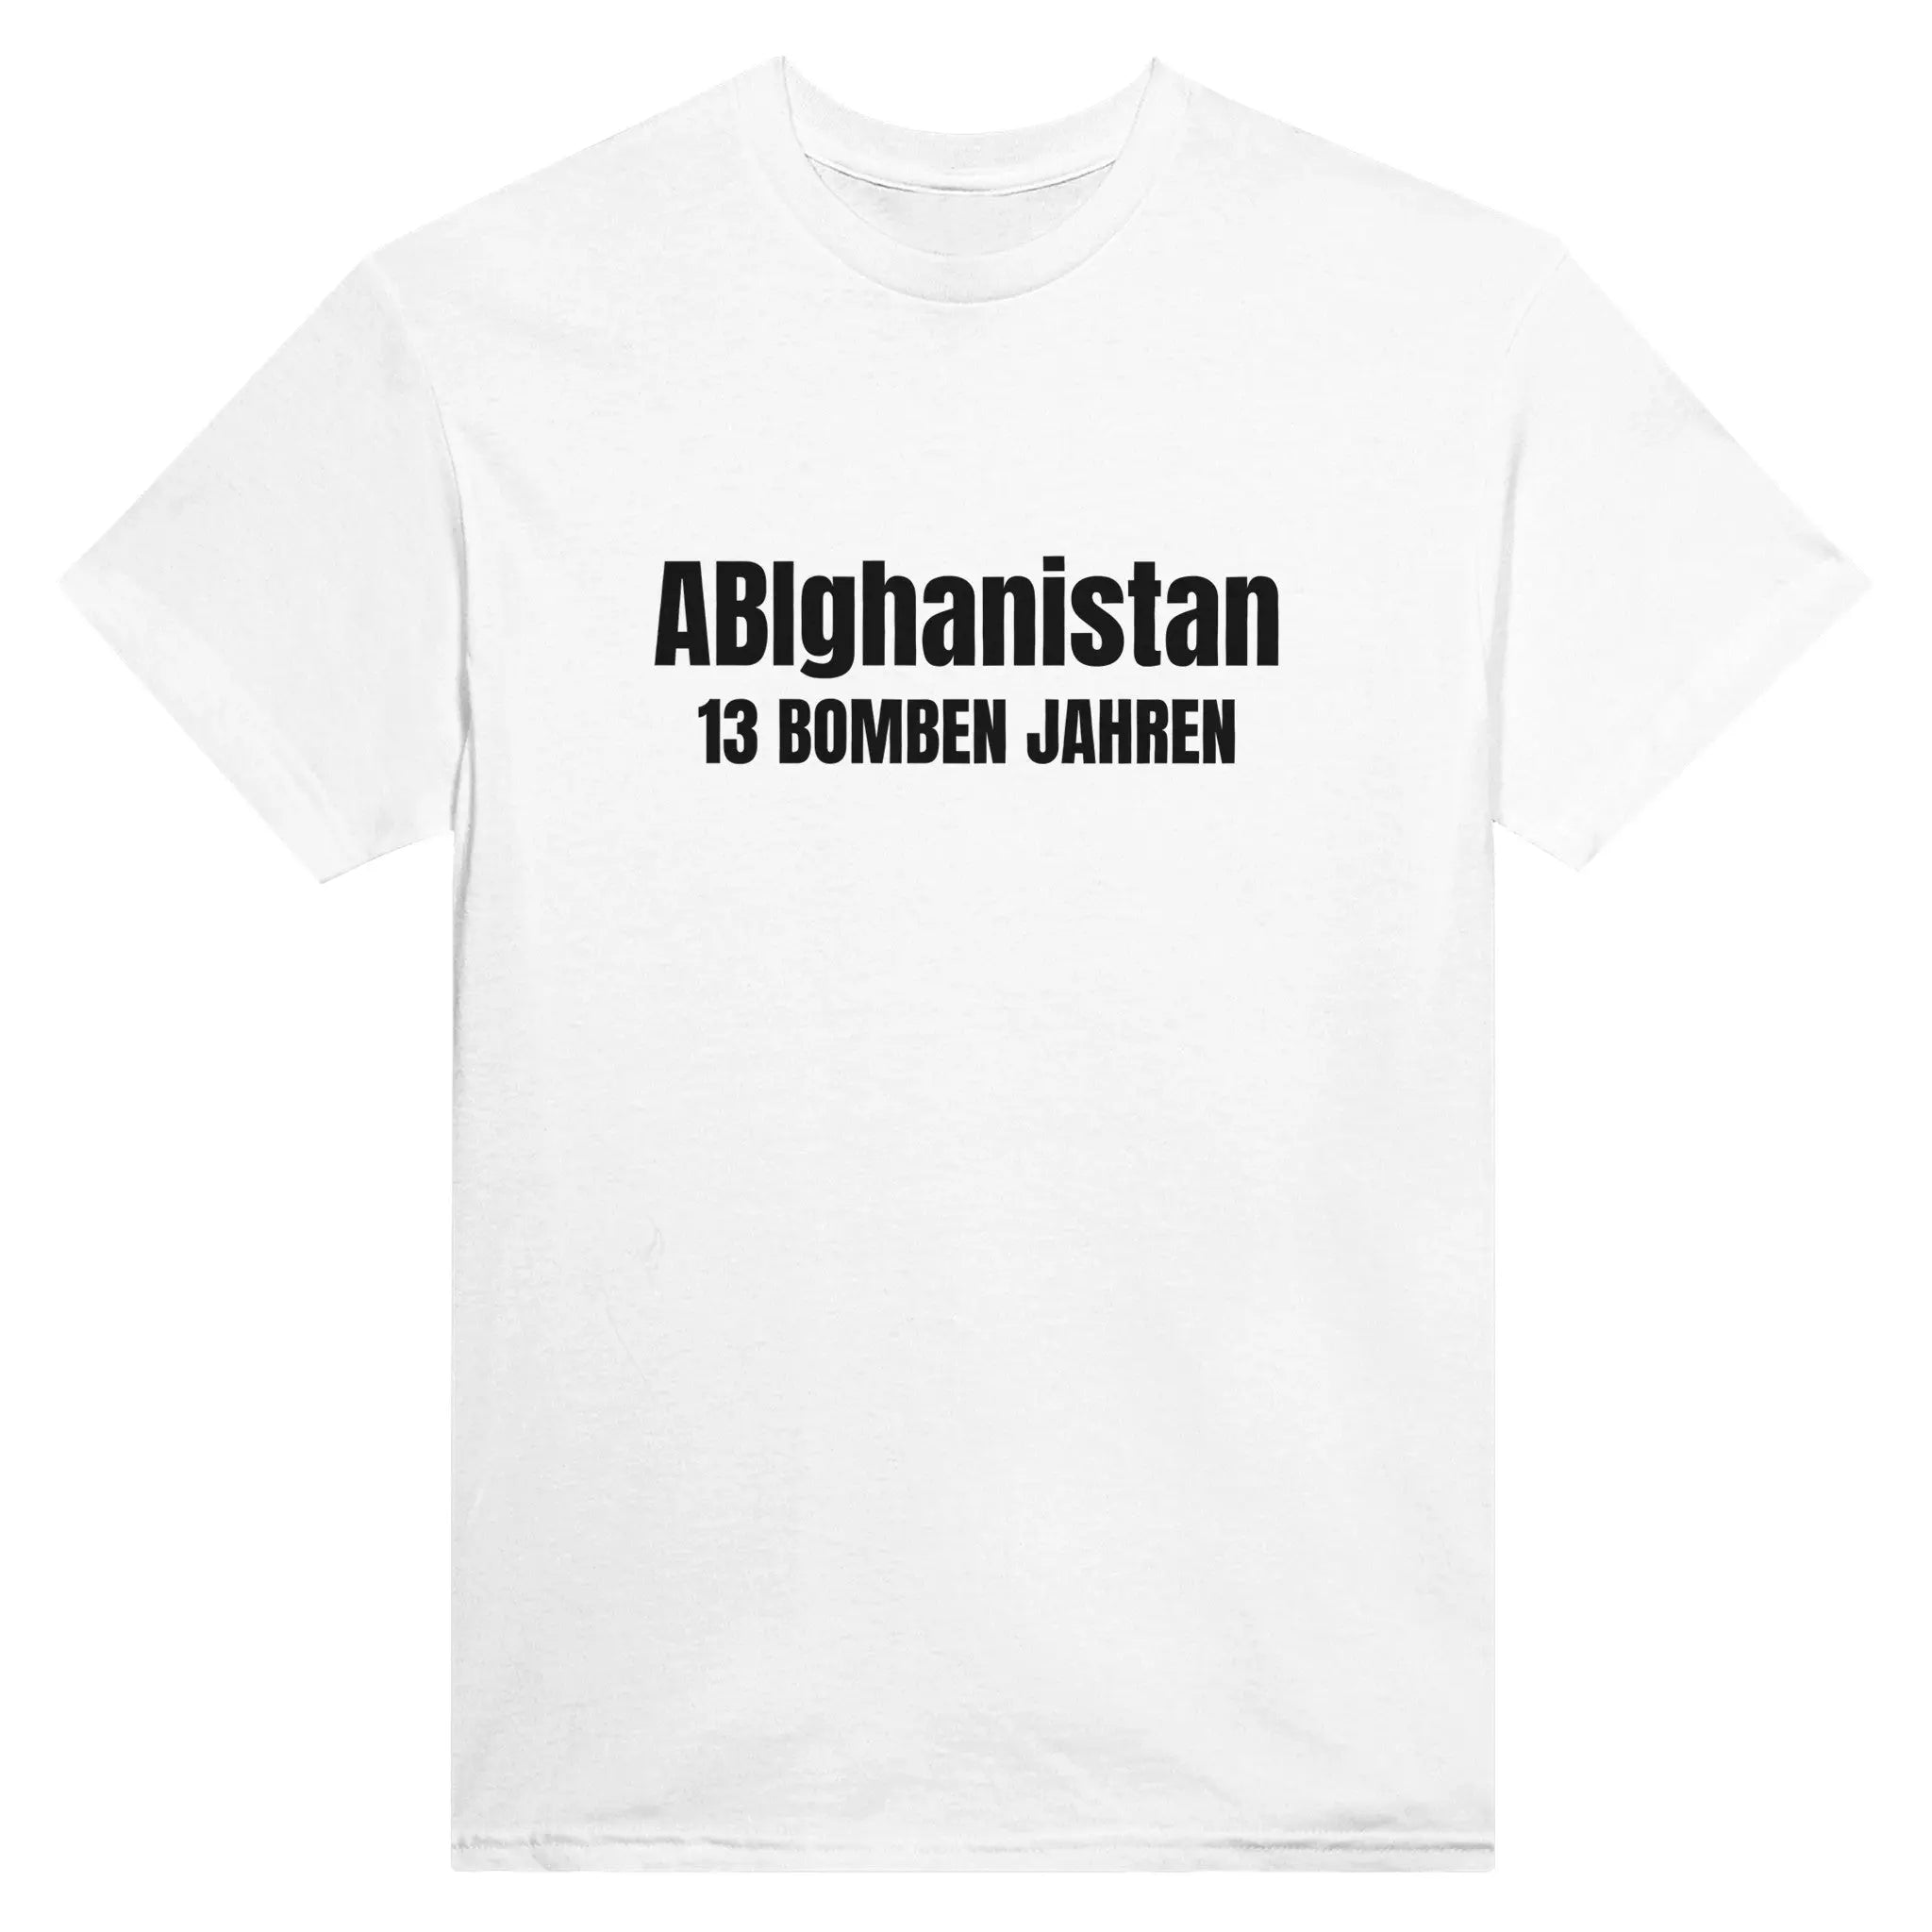 ABIghanistan - 13 Bomben Jahre